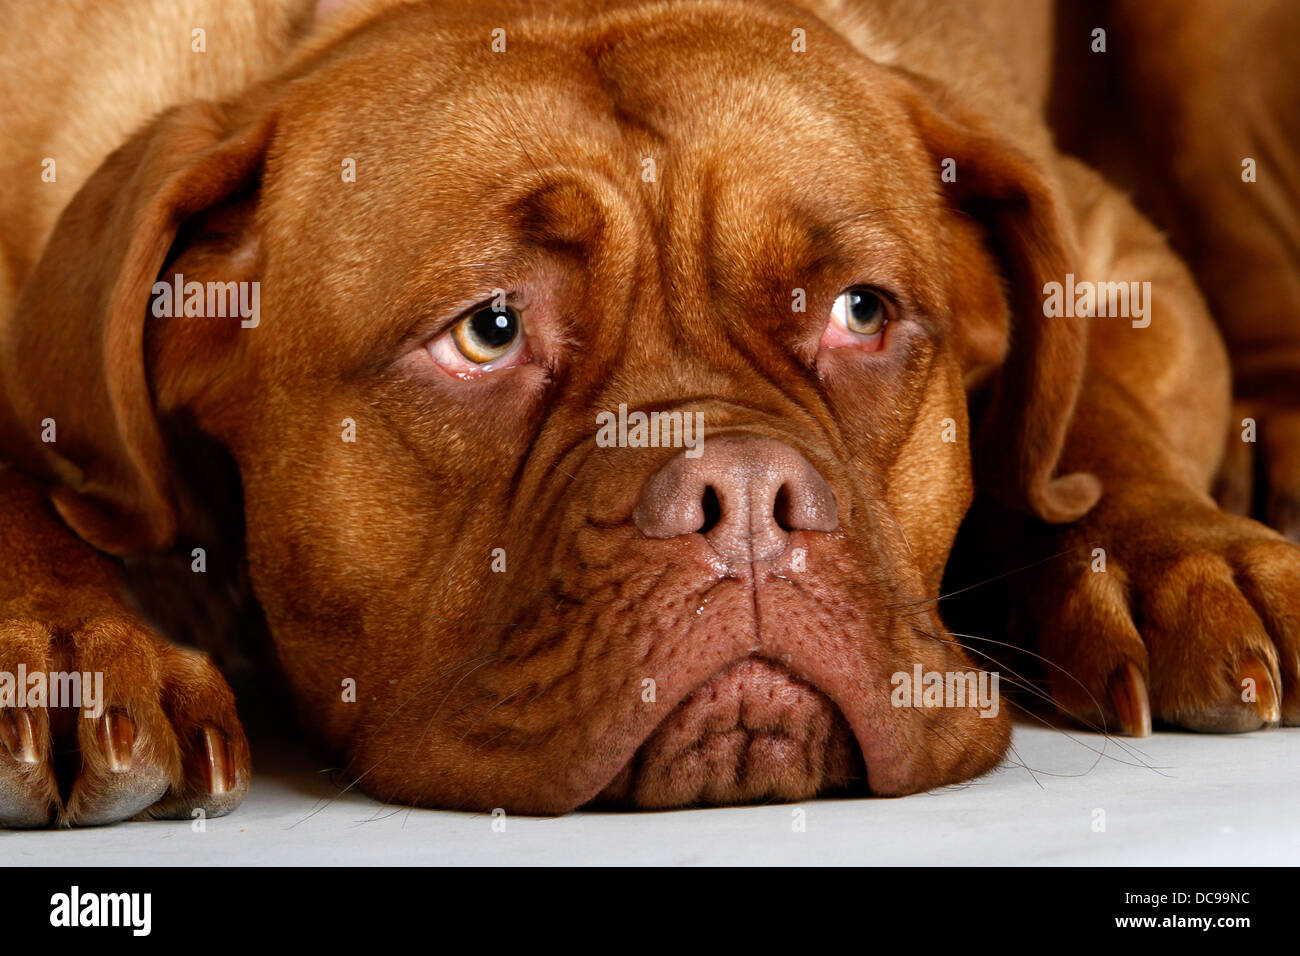 Dogue de Bordeaux, Bordeaux Mastiff, Bordeaux Dogge. Adult lying, portrait Stock Photo